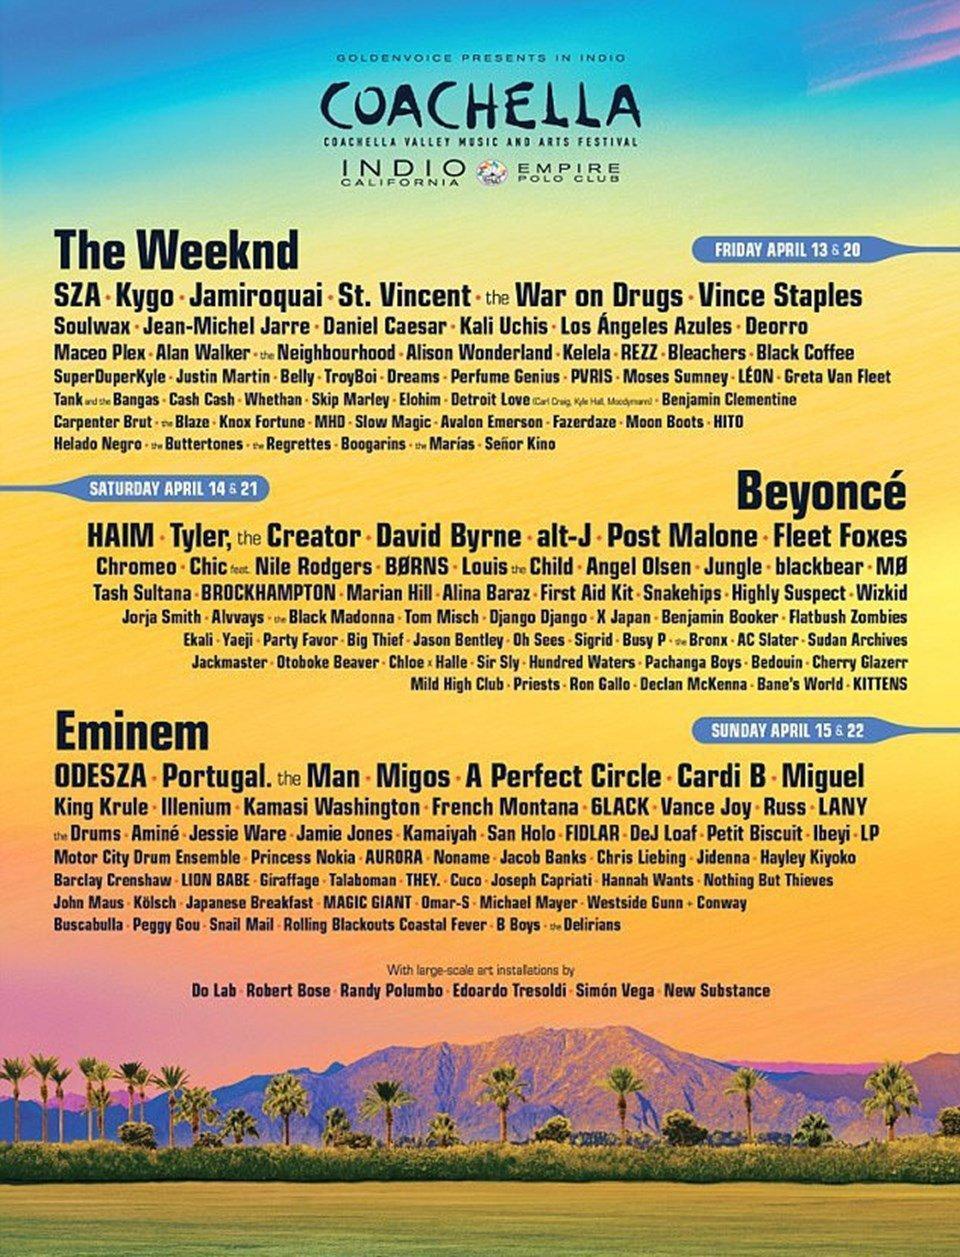 Coachella 2018de sahne alacak isimler açıklandı